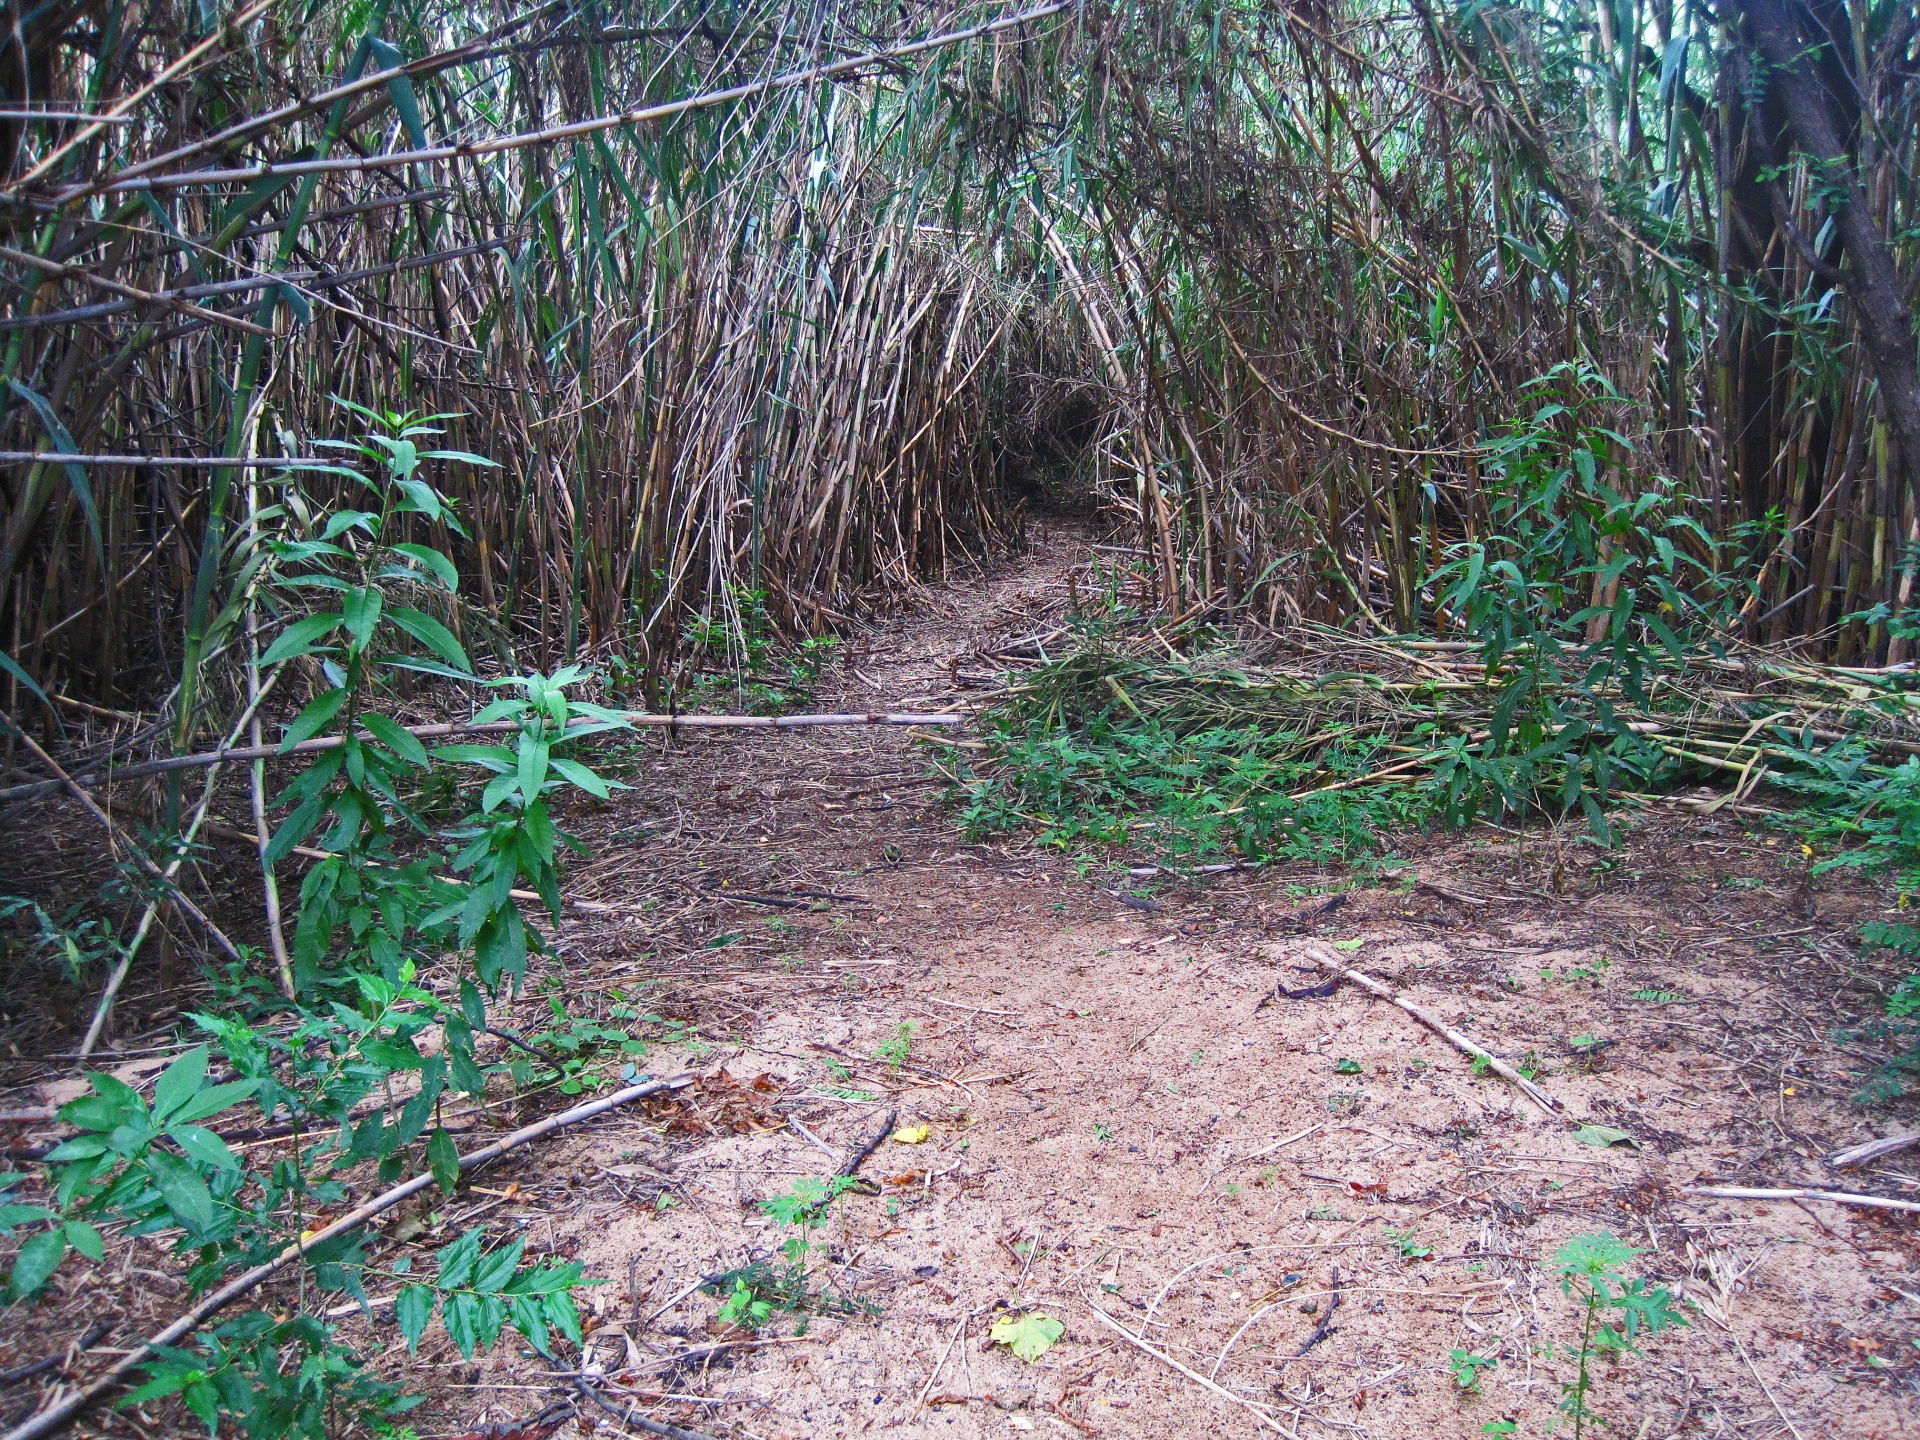 Vista do caminho em reed bush